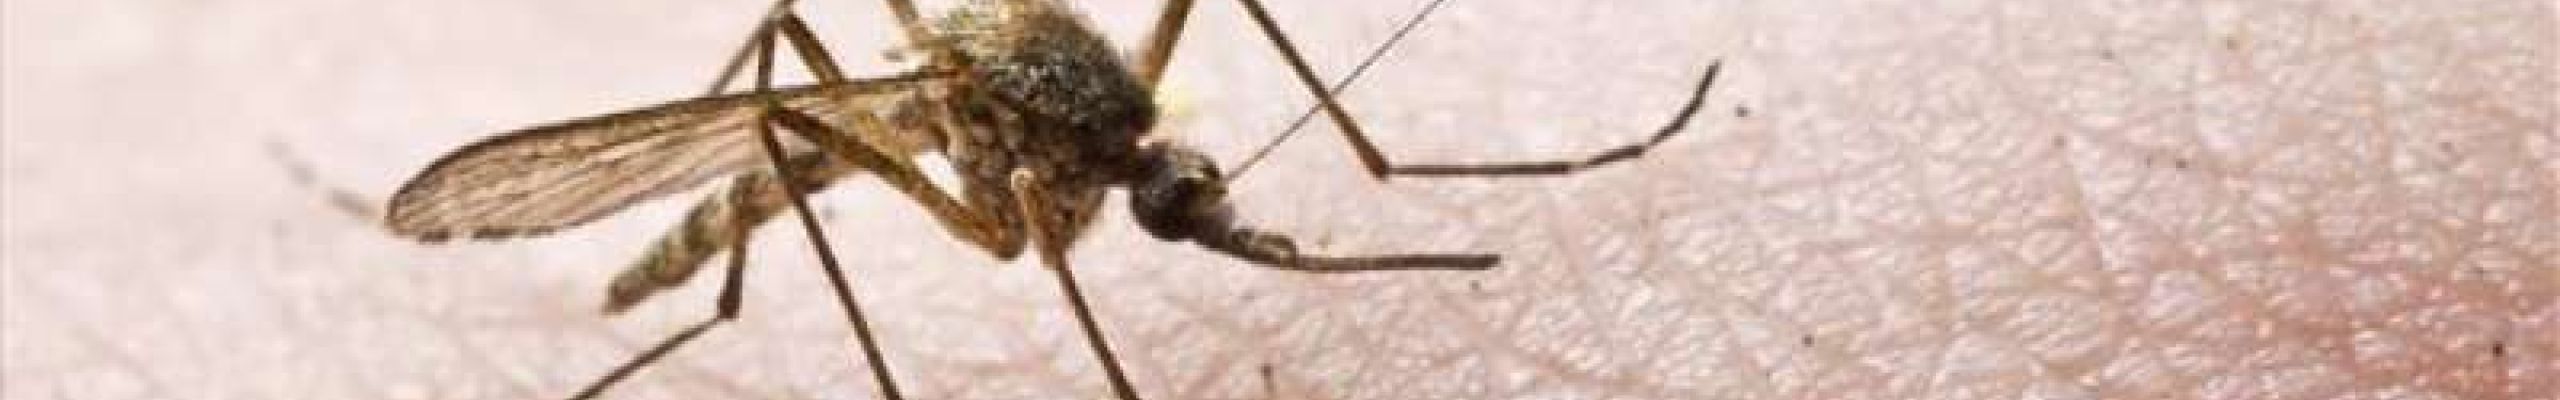 2ος κύκλος ψεκασμών για την καταπολέμηση των κουνουπιών